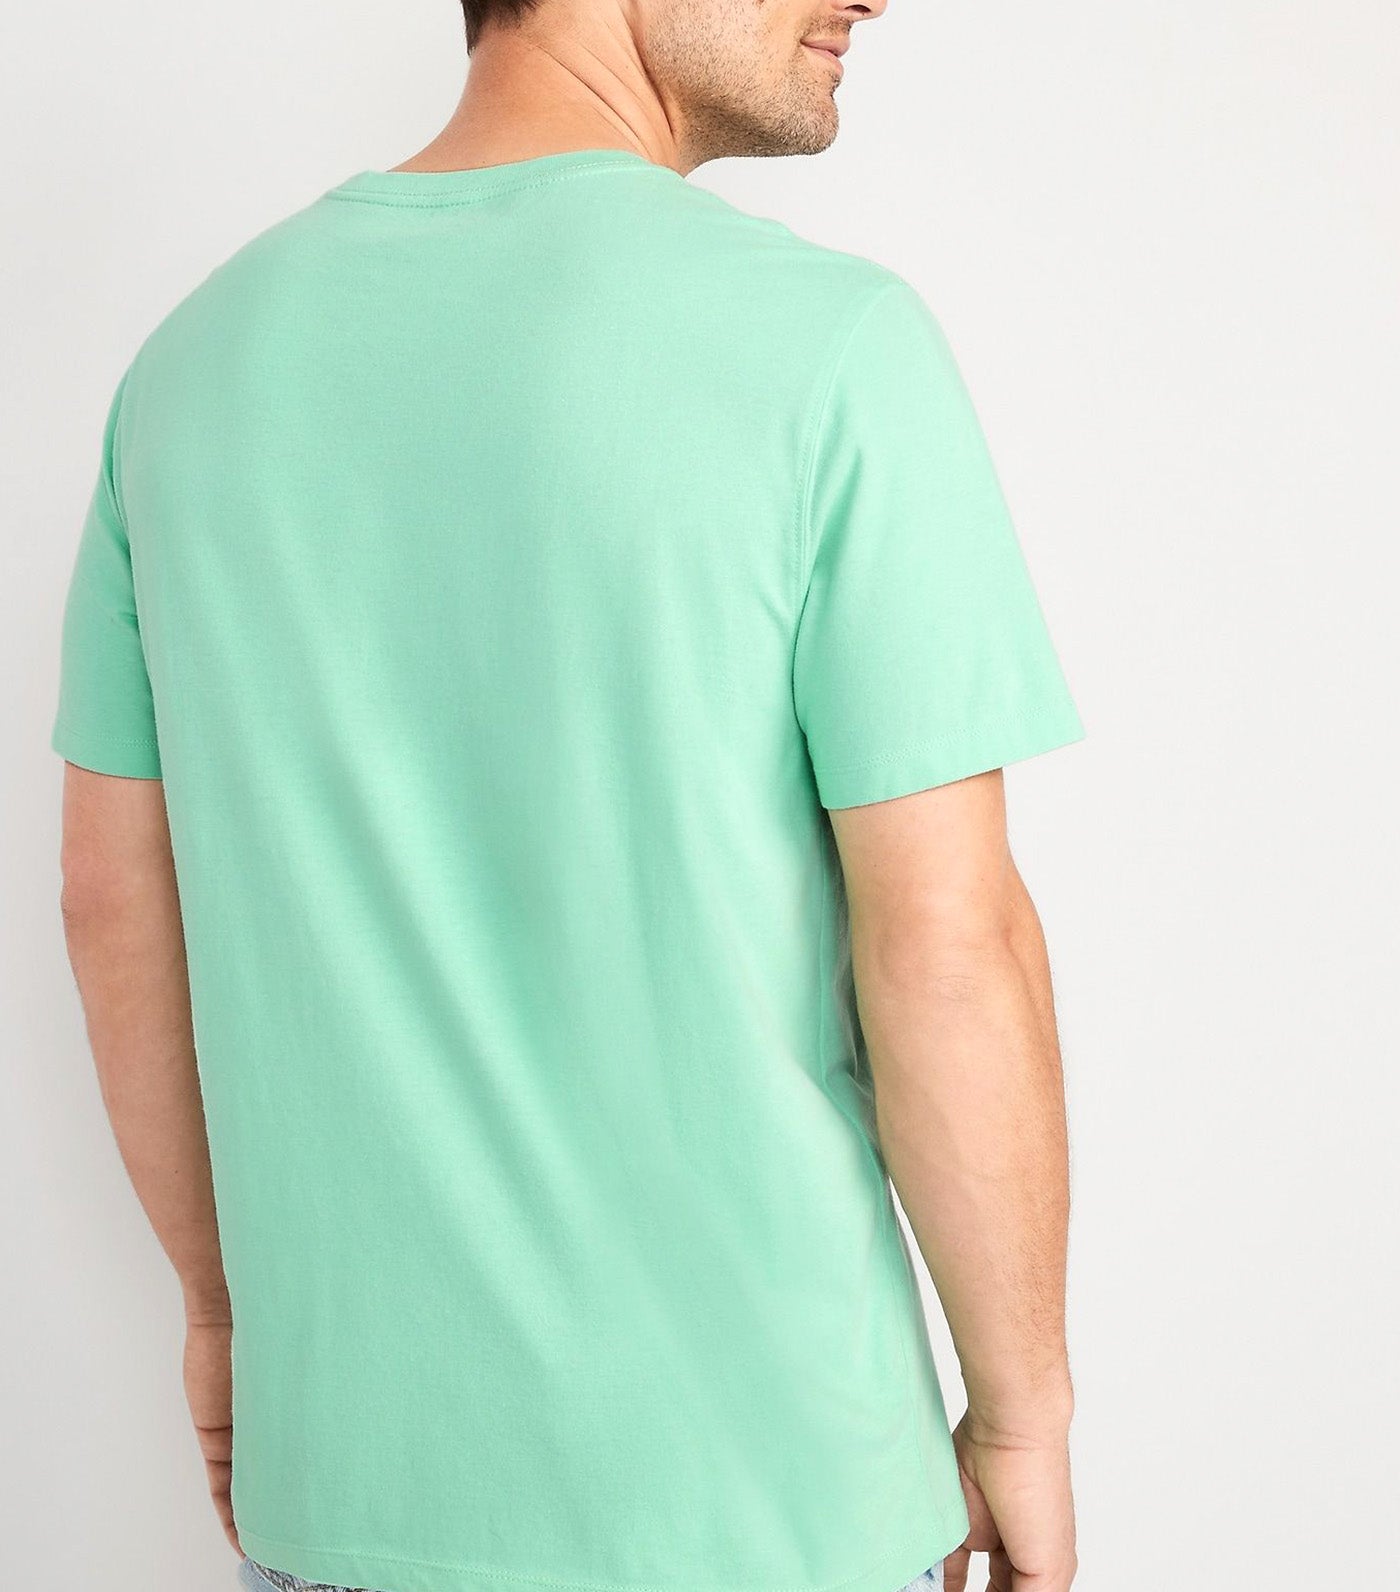 Soft-Washed Crew-Neck T-Shirt for Men Subtle Green